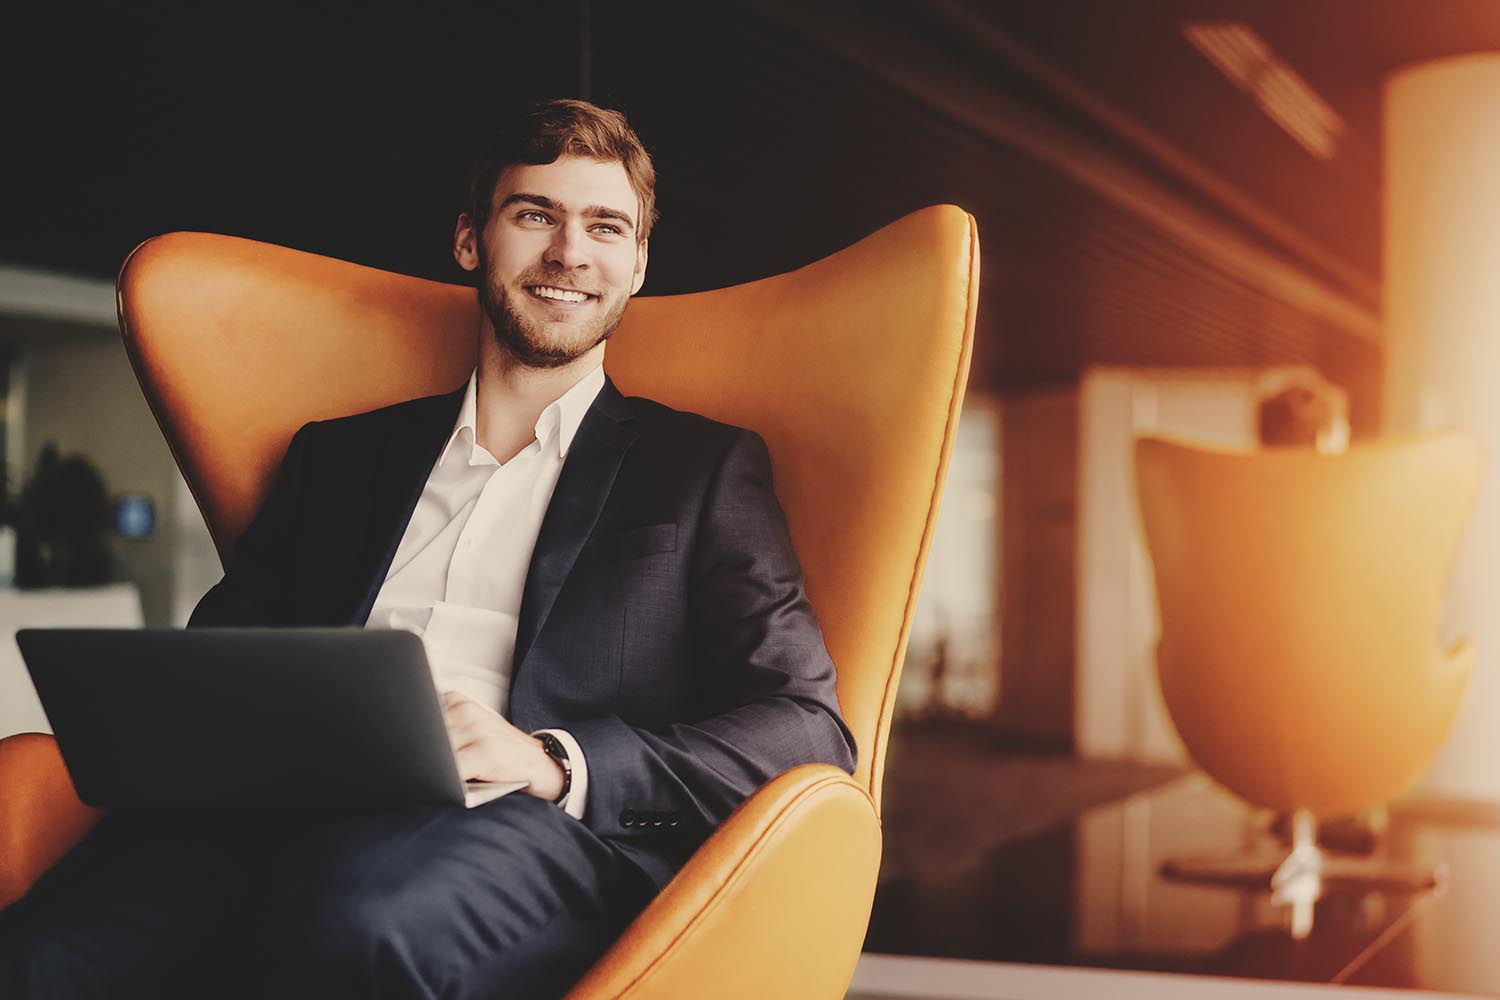 Молодой улыбающийся успешный человек предприниматель в формальном бизнес-люксе с бородкой сидит на оранжевом кресле с ноутбуком в роскошном офисном интерьере